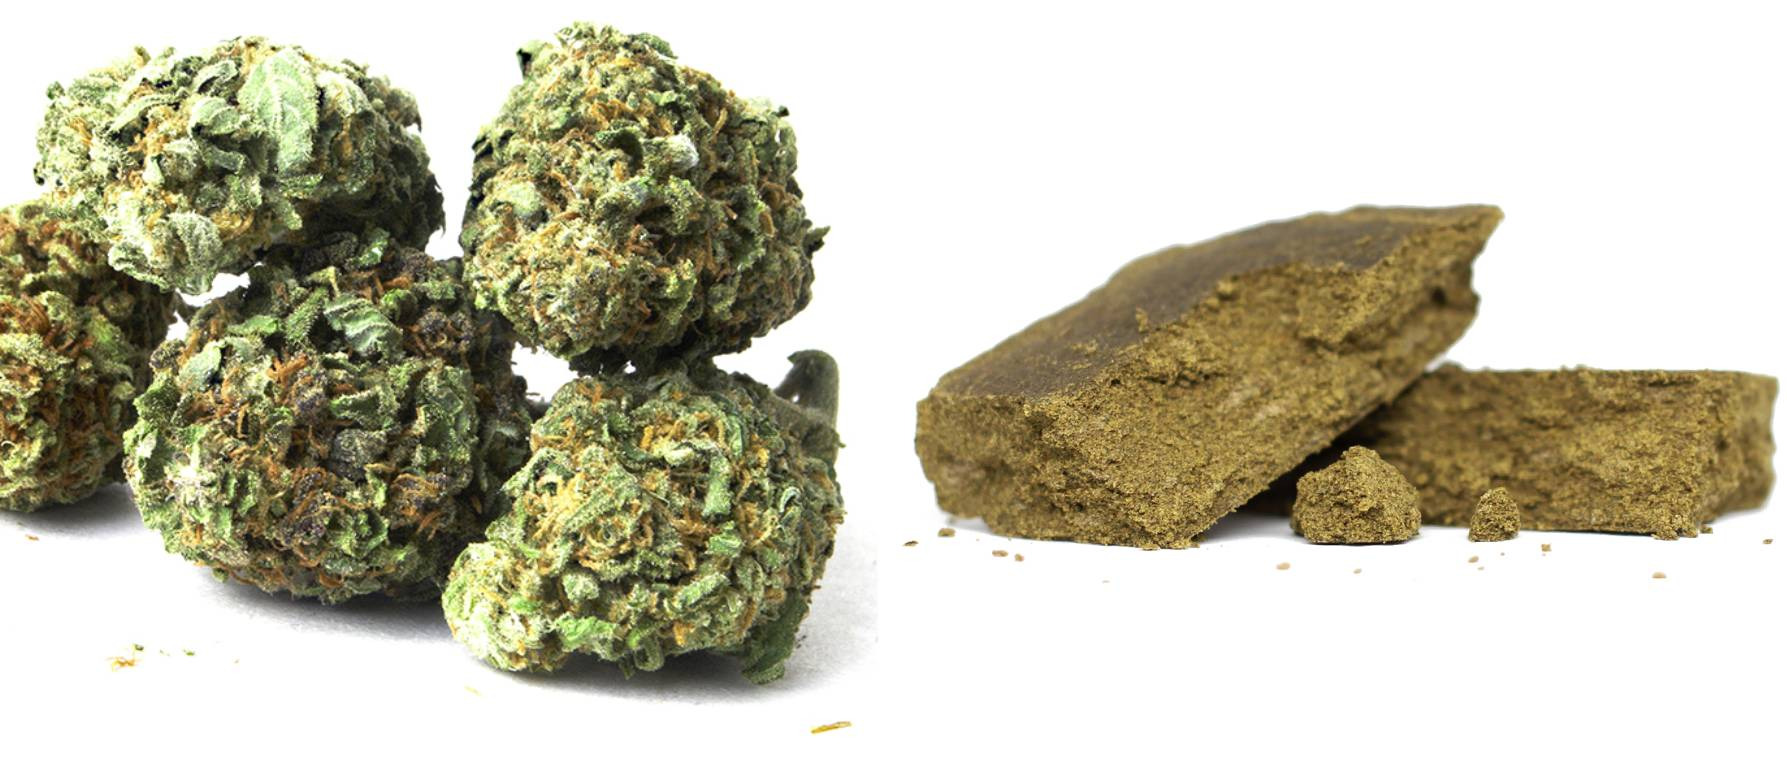 Qué diferencias hay entre la marihuana y el hachís